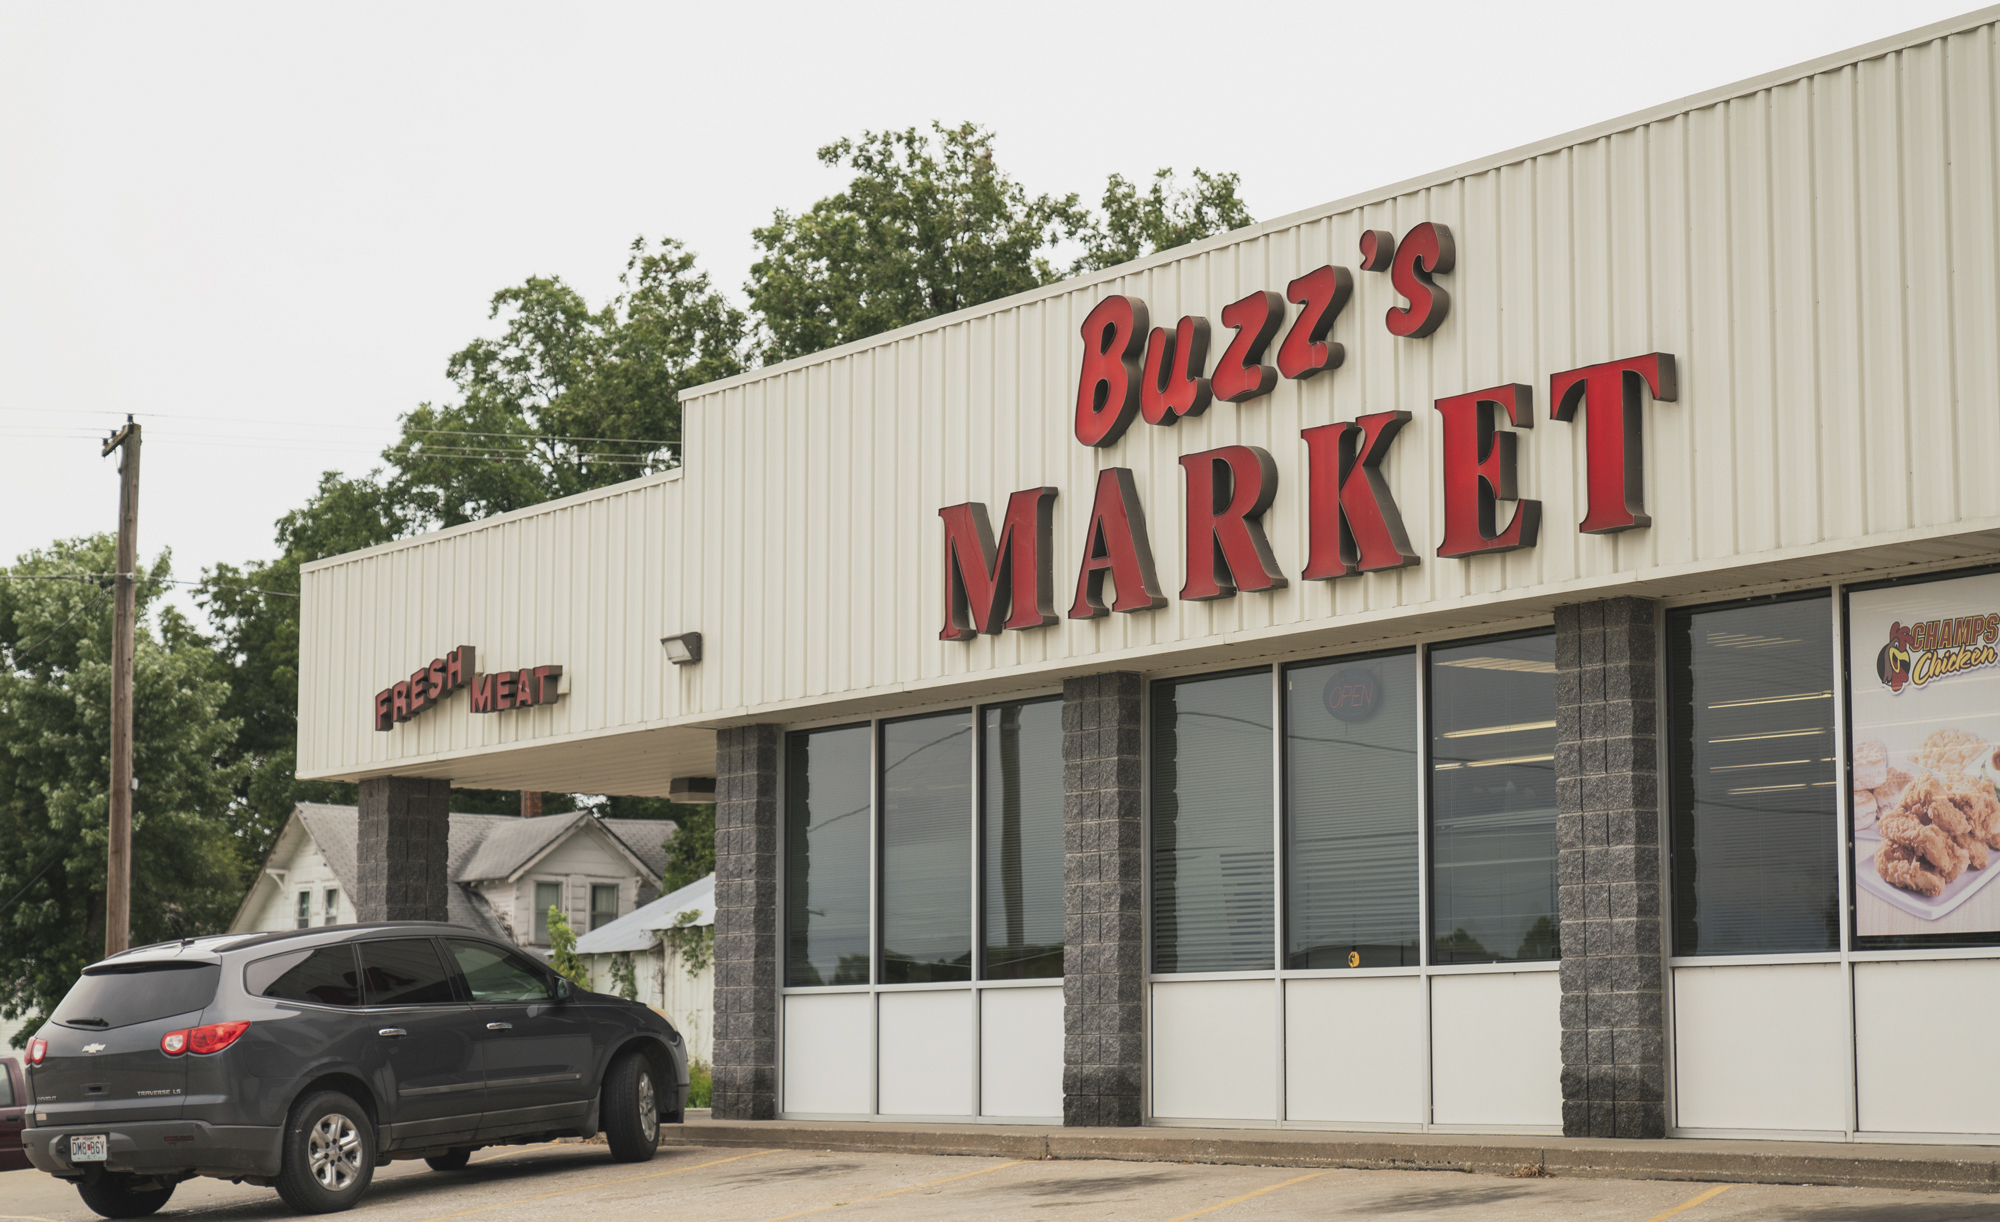 Buzz's Market in Collins, Missouri.  